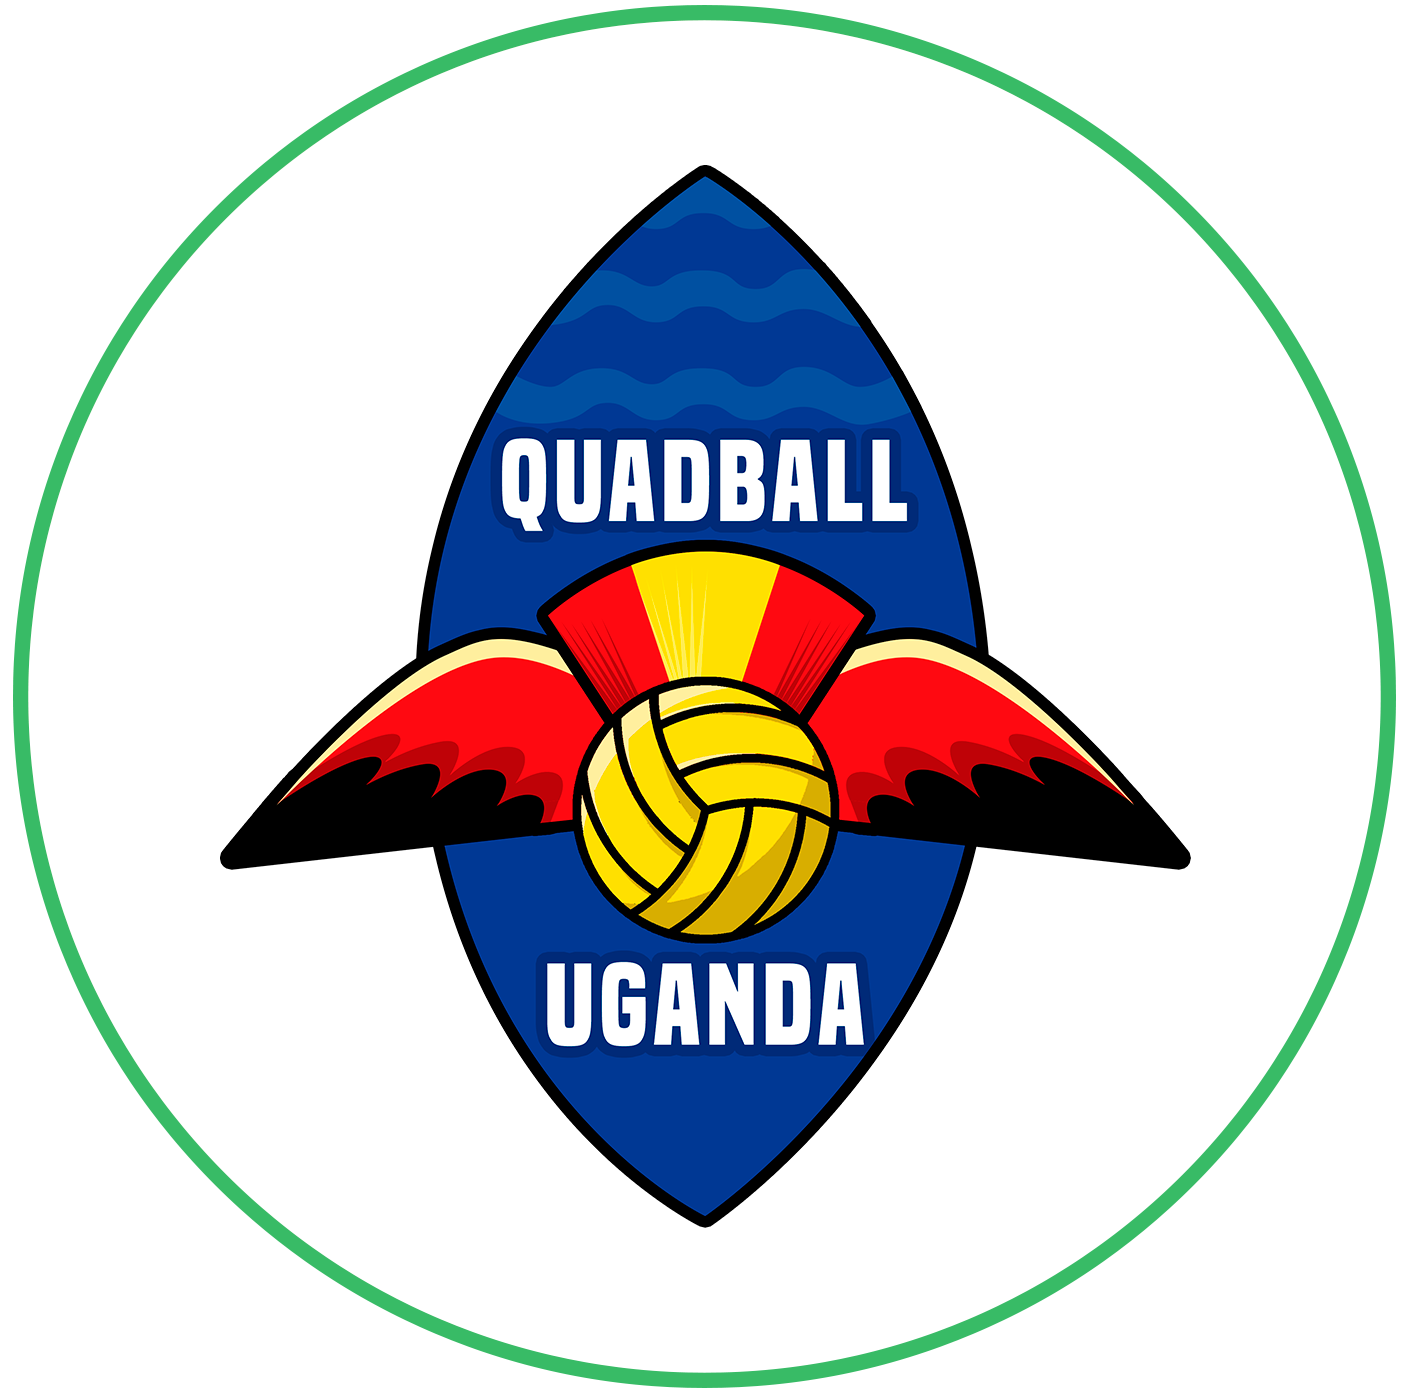 Uganda Quadball logo